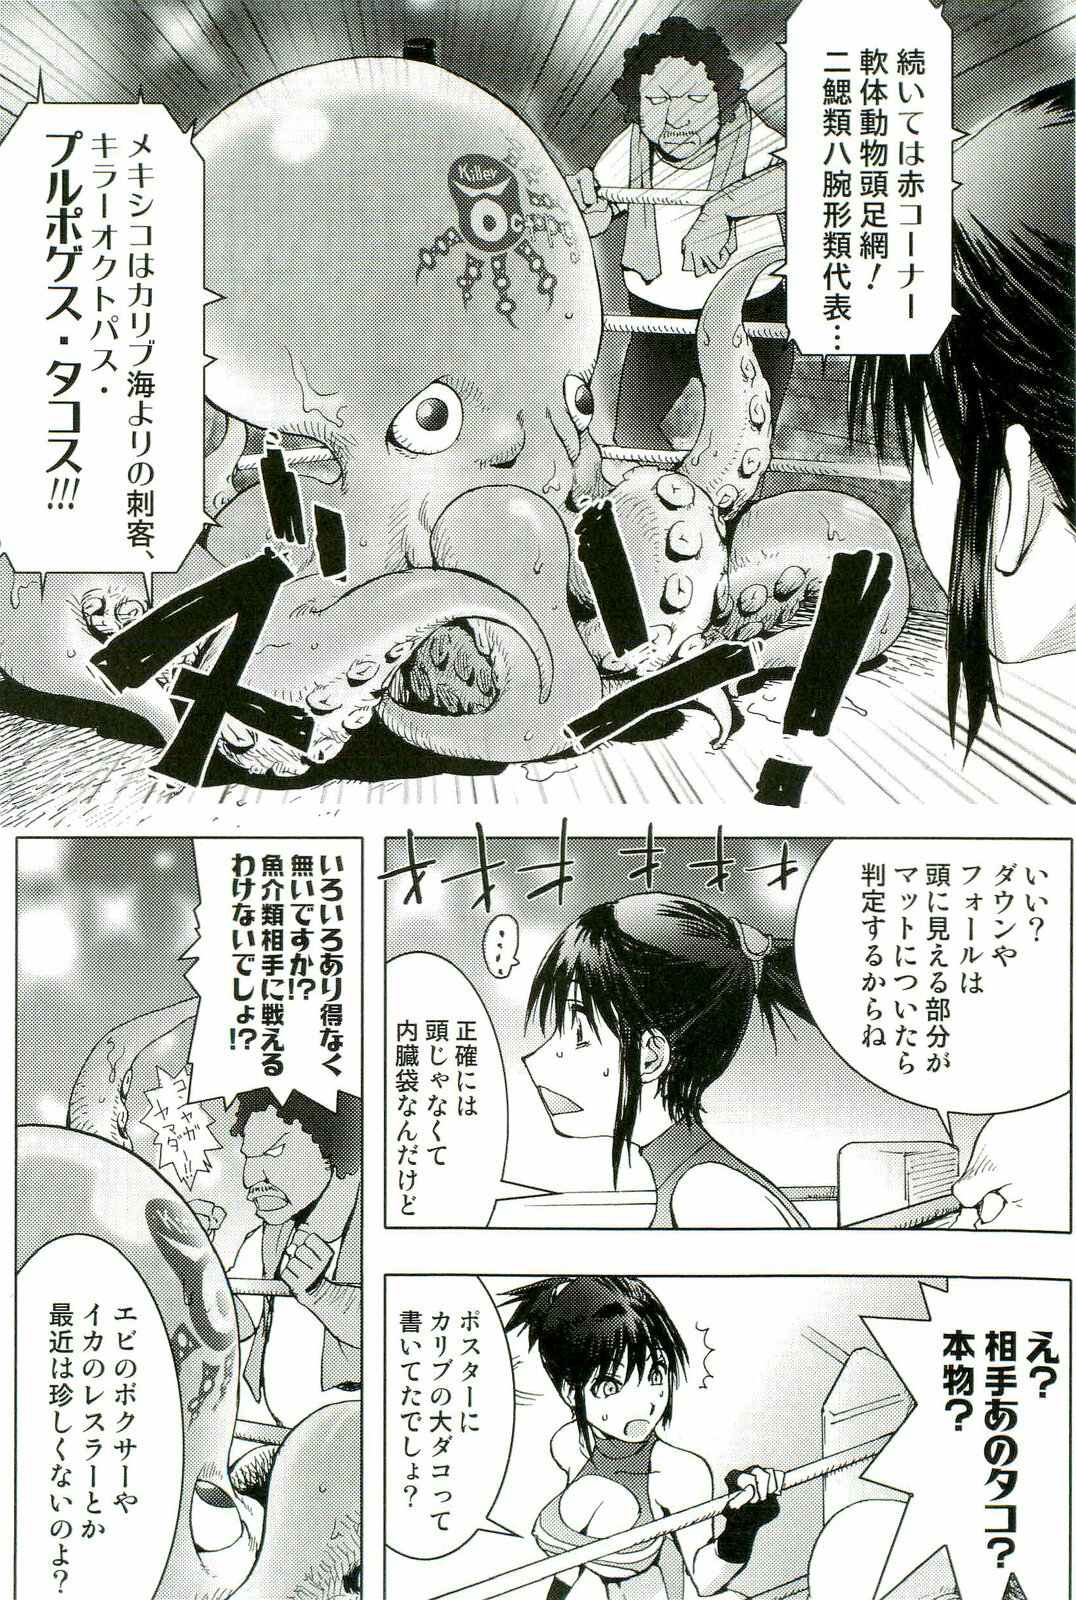 [Anthology] Shokushu! Etsuraku no Utage 2 page 45 full